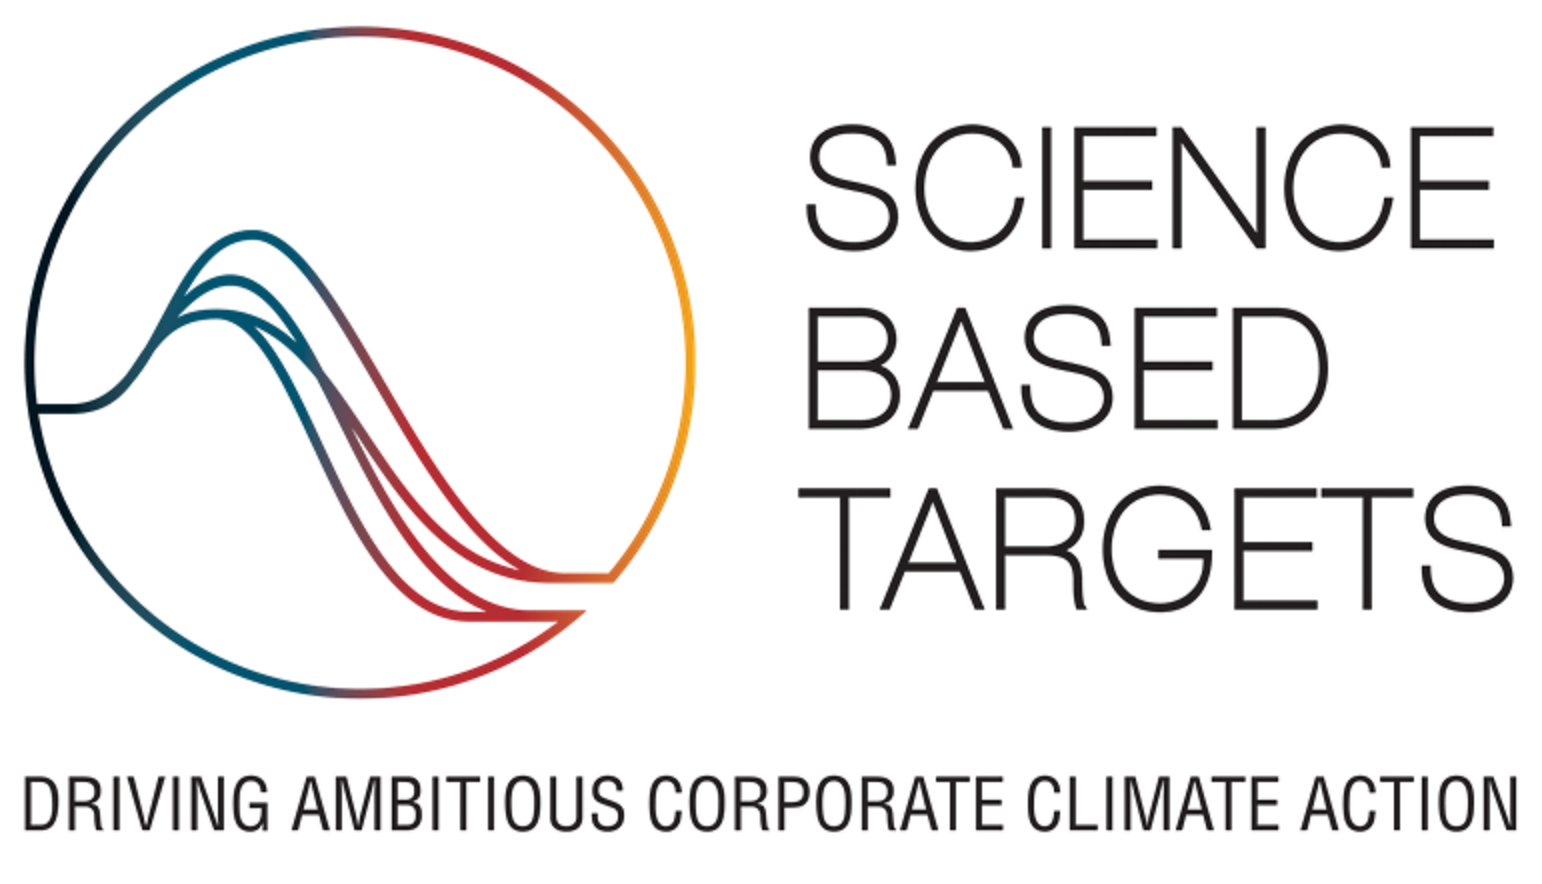 La SBTi aprueba las ambiciosas metas de acción climática de Bakkafrost